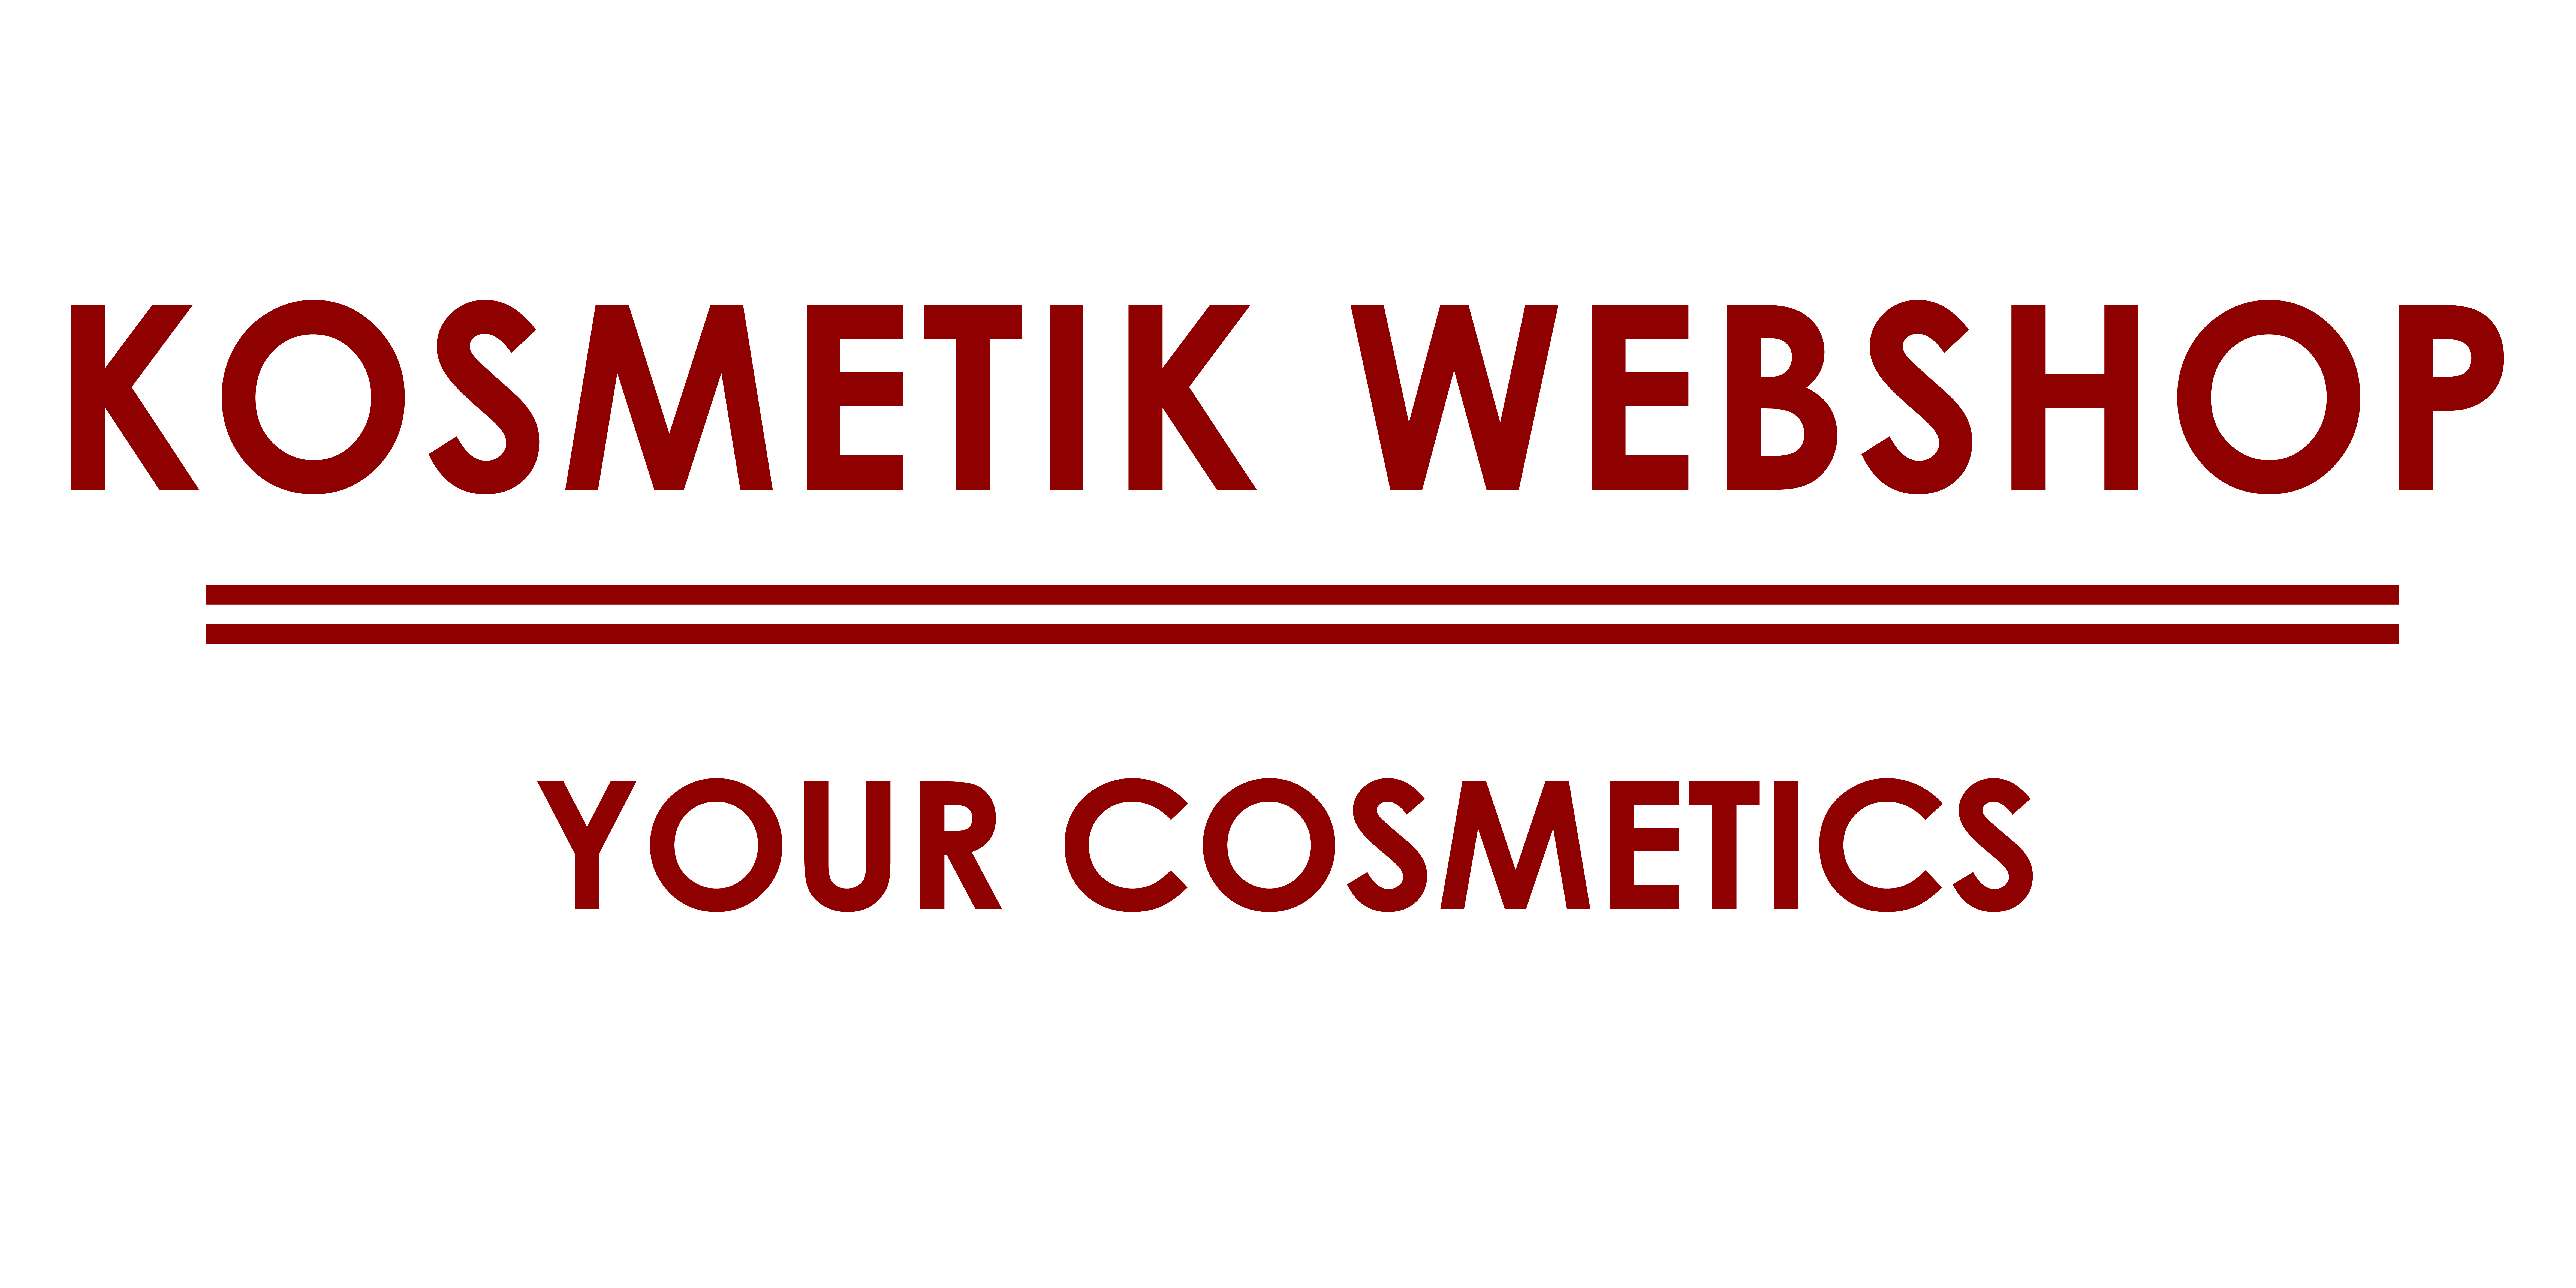 Kosmetik Webshop mit günstigen Kosmetikprodukten